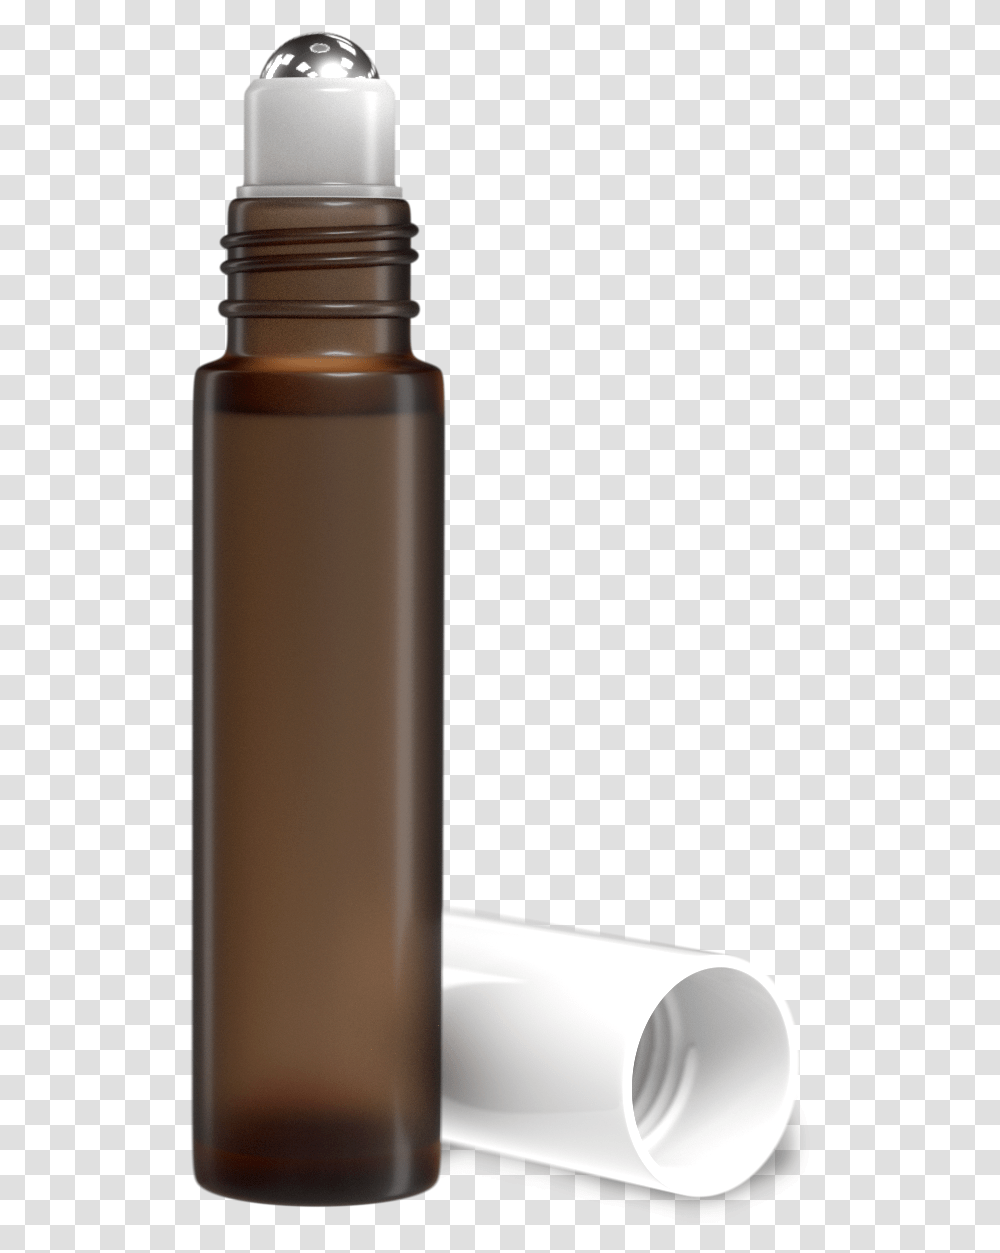 Essential Oil Roller Bottle, Cylinder, Jar, Water Bottle Transparent Png